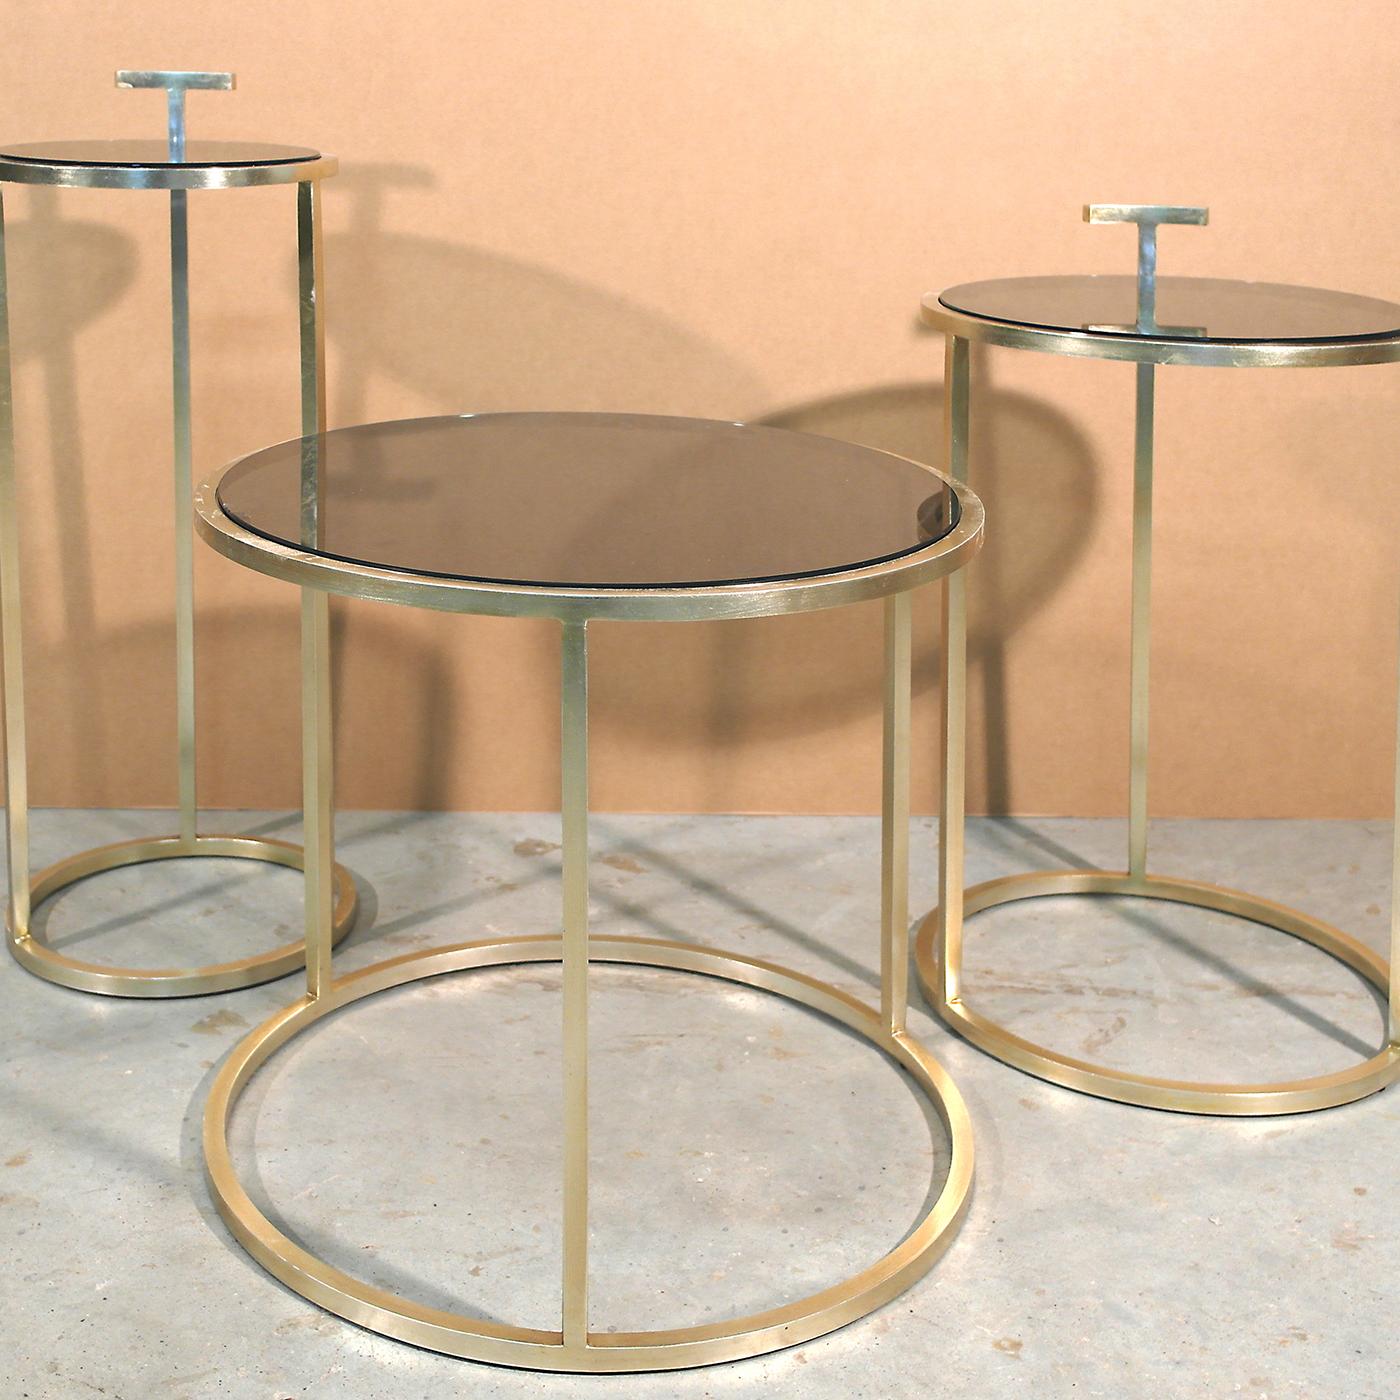 Cette table d'appoint ronde constitue un ajout élégant au salon, grâce à sa base circulaire en laiton avec une finition en bronze brossé clair. Caractérisé par des lignes pures et des formes géométriques, le design est complété par un plateau en